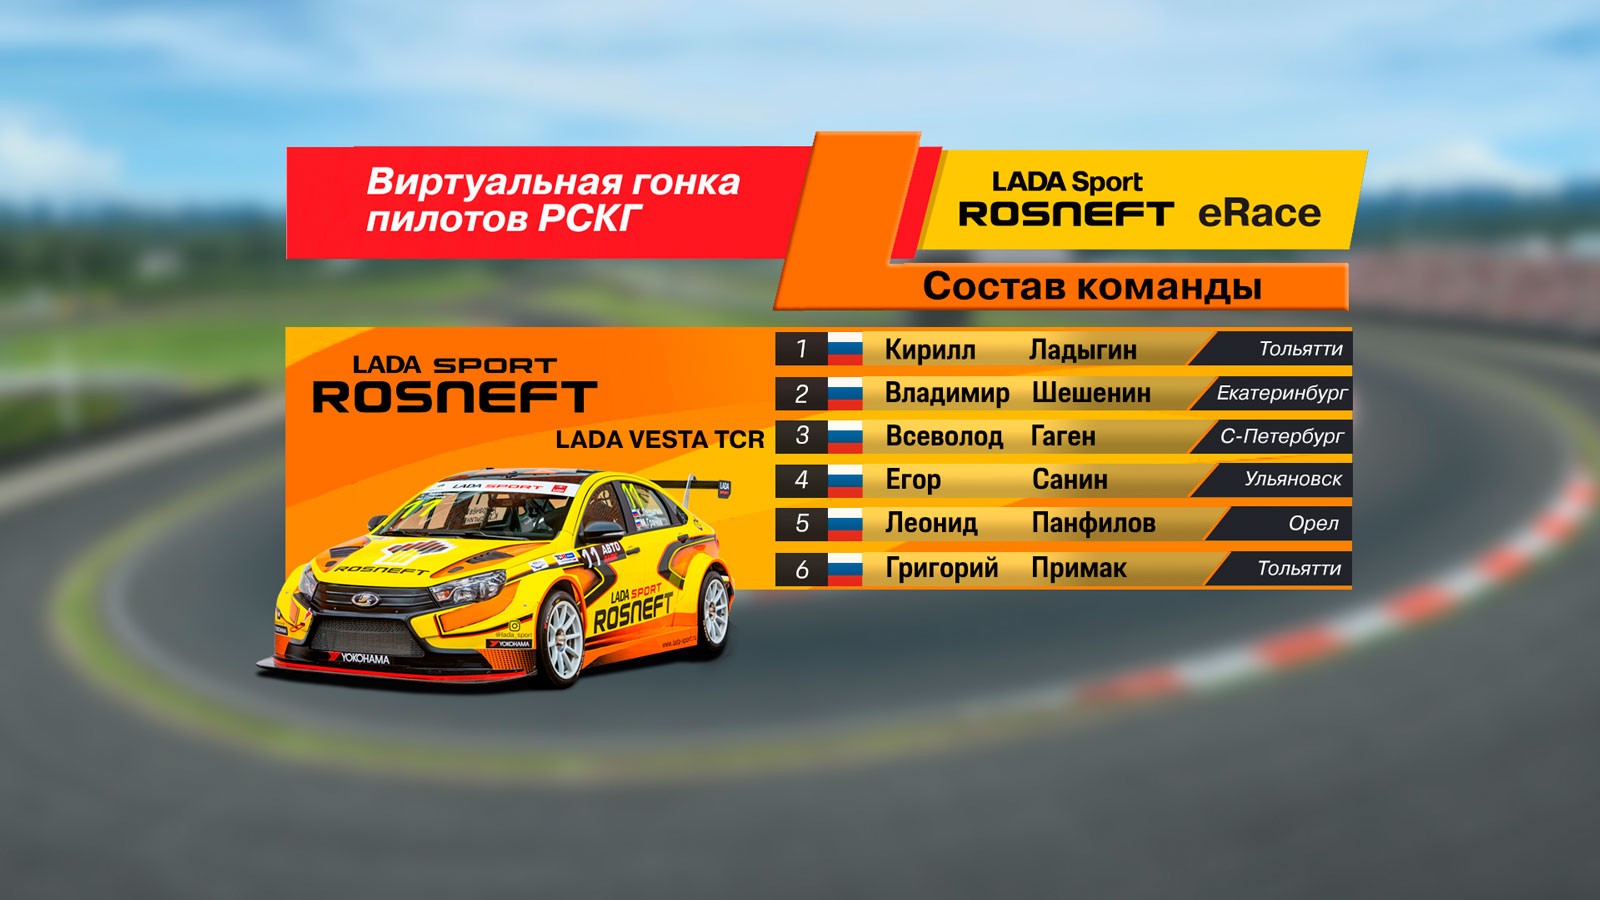 Победителем онлайн-гонки LADA Sport ROSNEFT eRace среди реальных пилотов стал Егор Санин